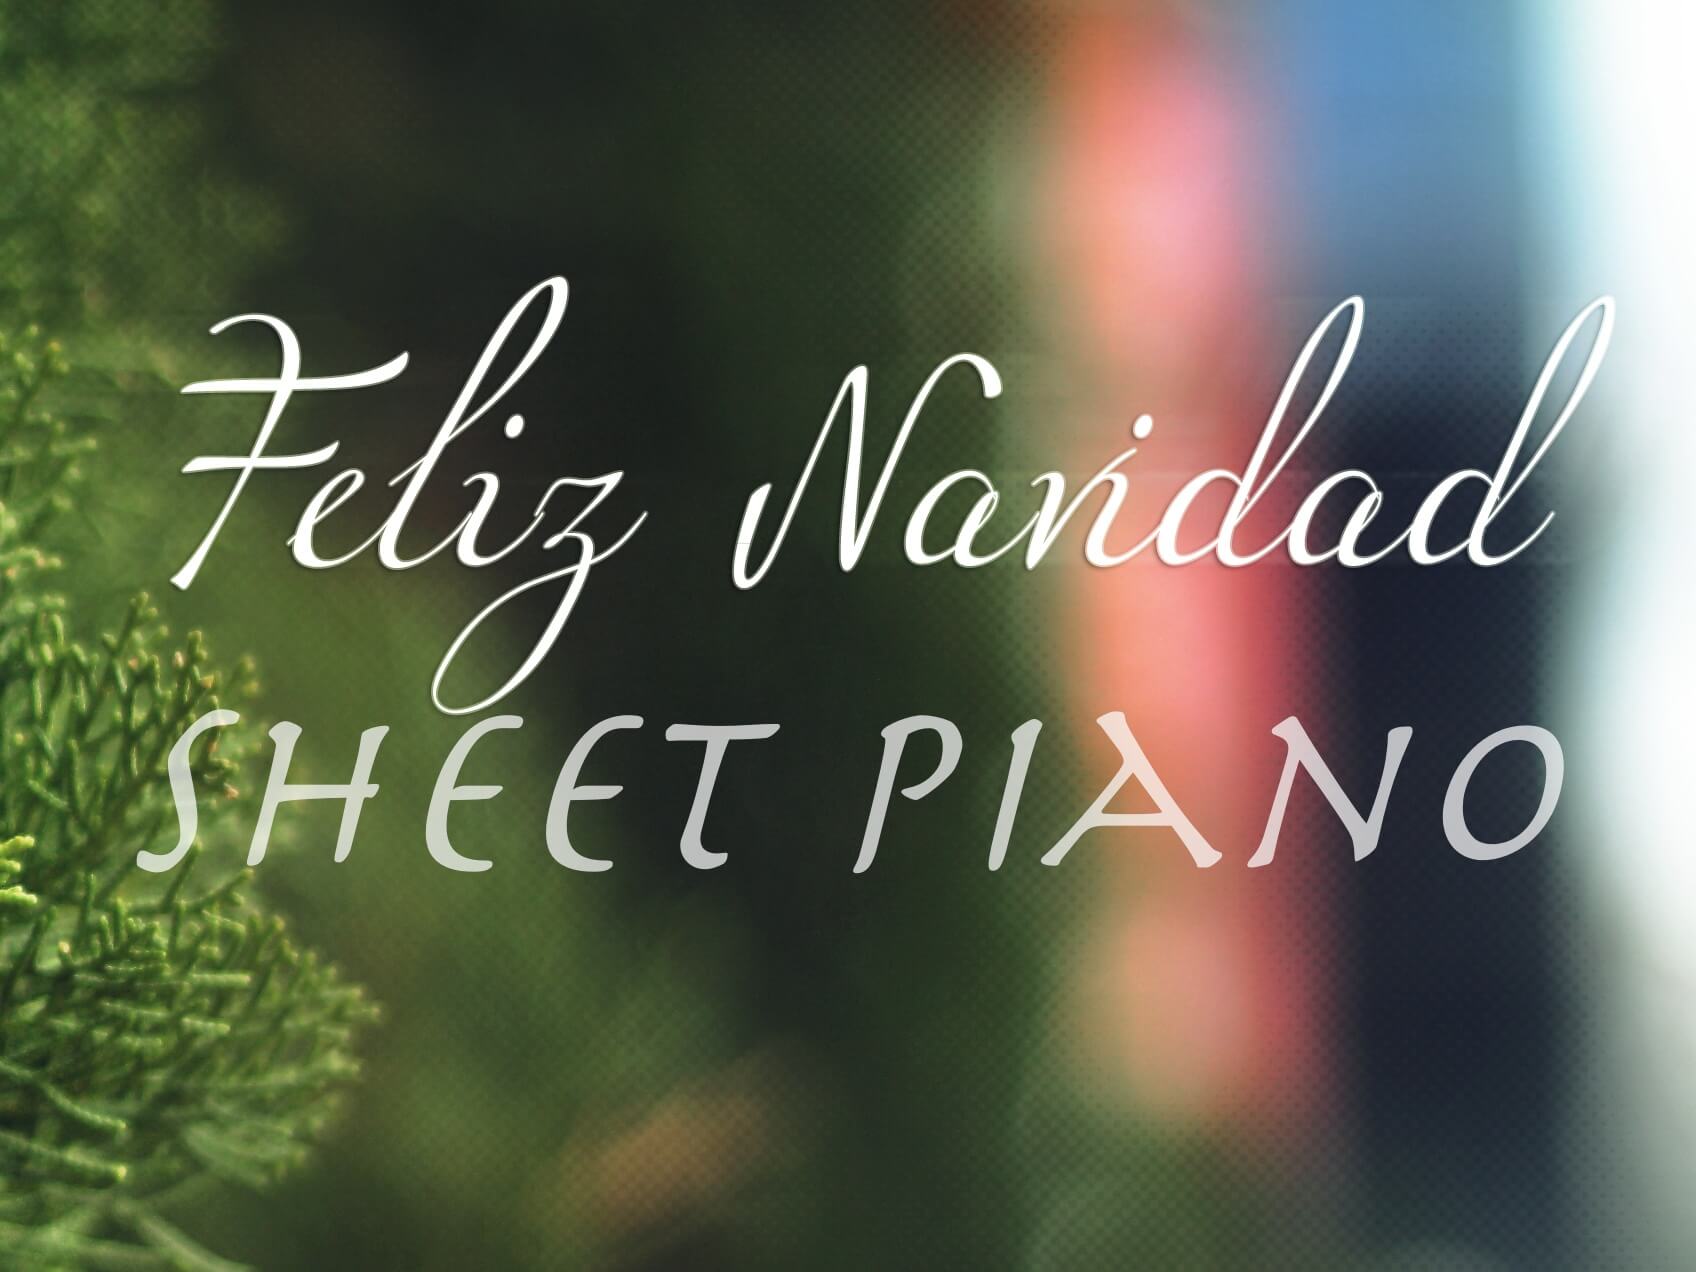 Sheet Piano FELIZ NAVIDAD – Puerto Rico José Feliciano